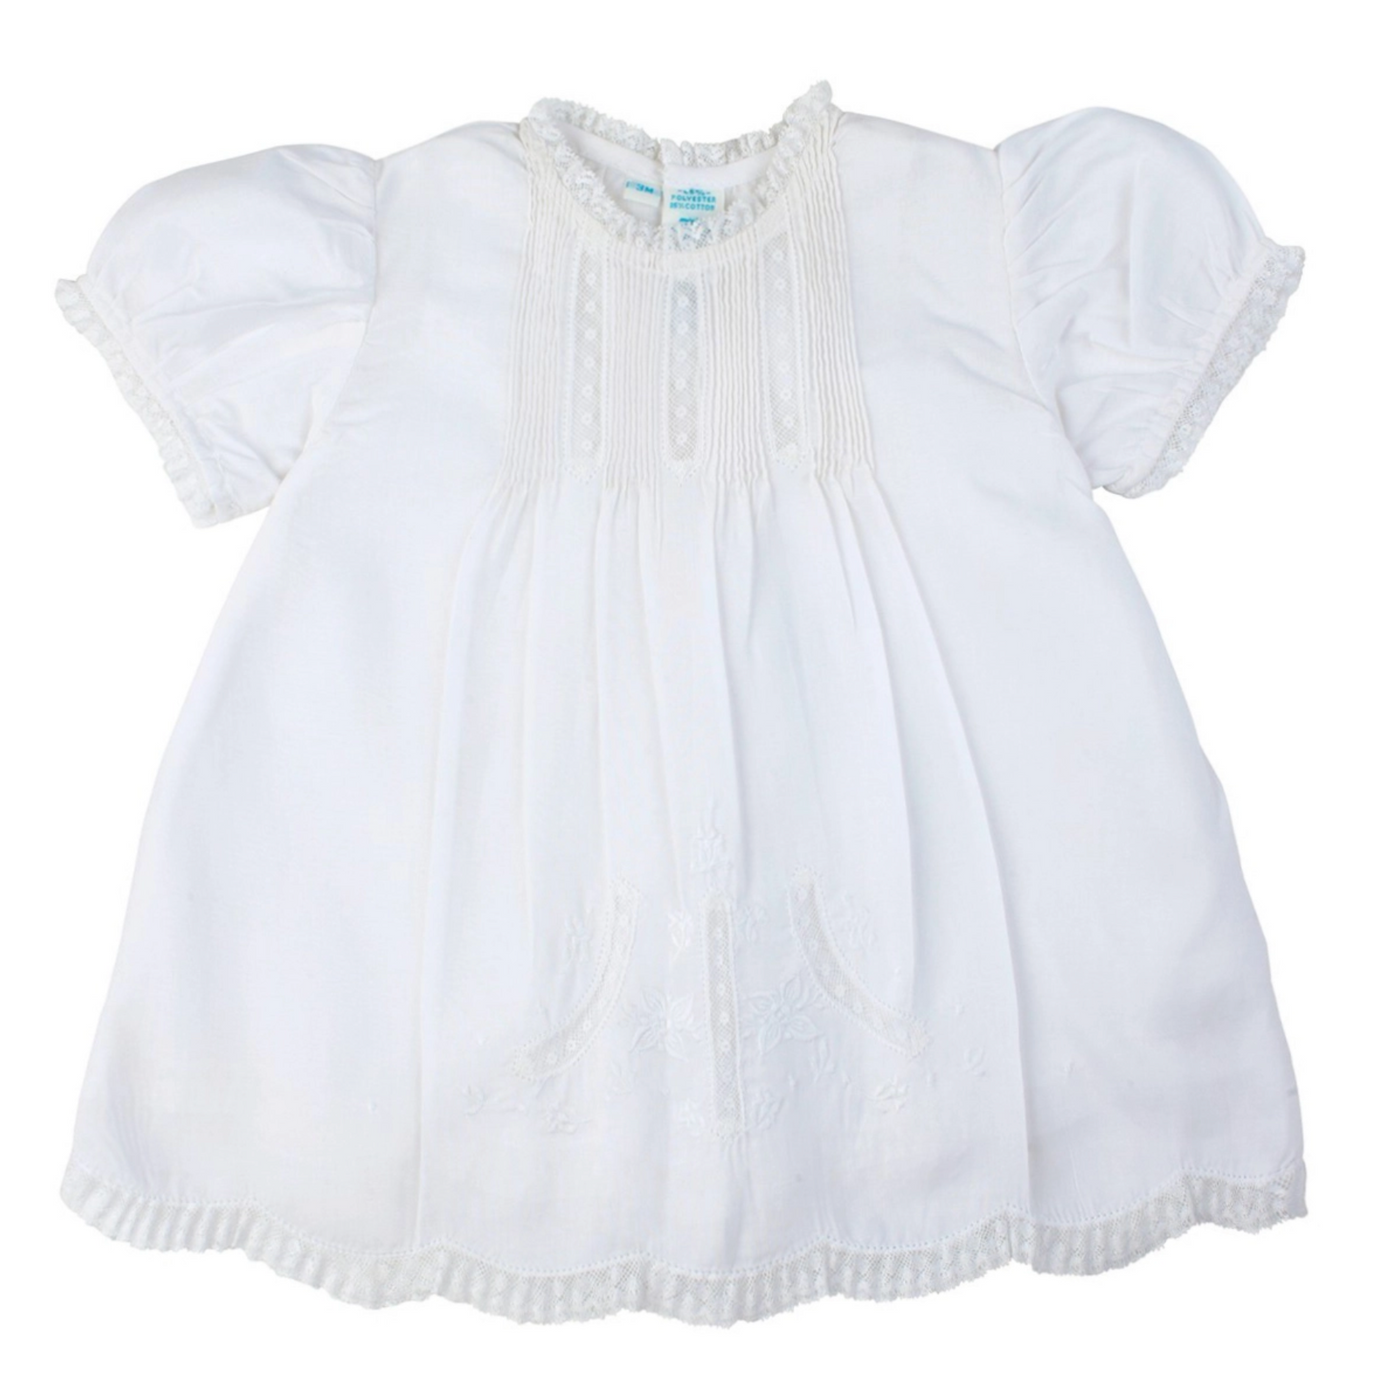 Detailed Lace Slip Dress-White - Mumzie's Children